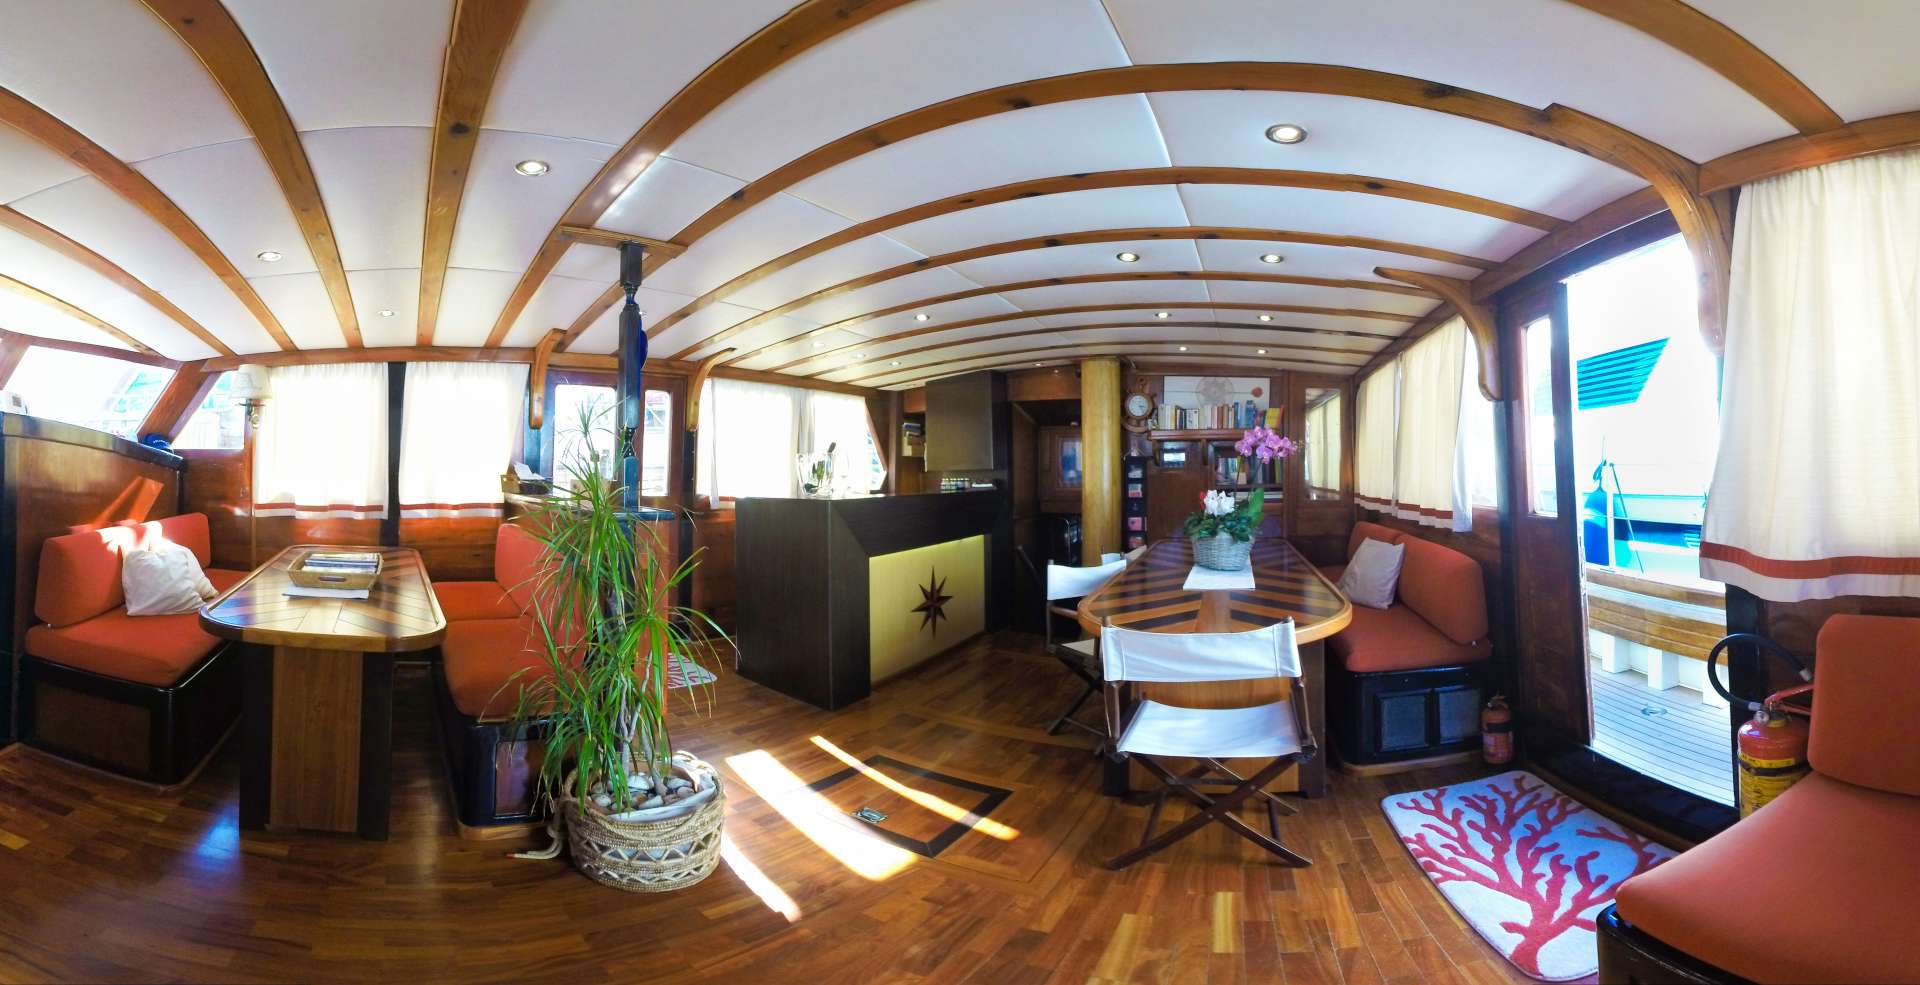 alissa - Yacht Charter Genoa & Boat hire in Fr. Riviera & Tyrrhenian Sea 2